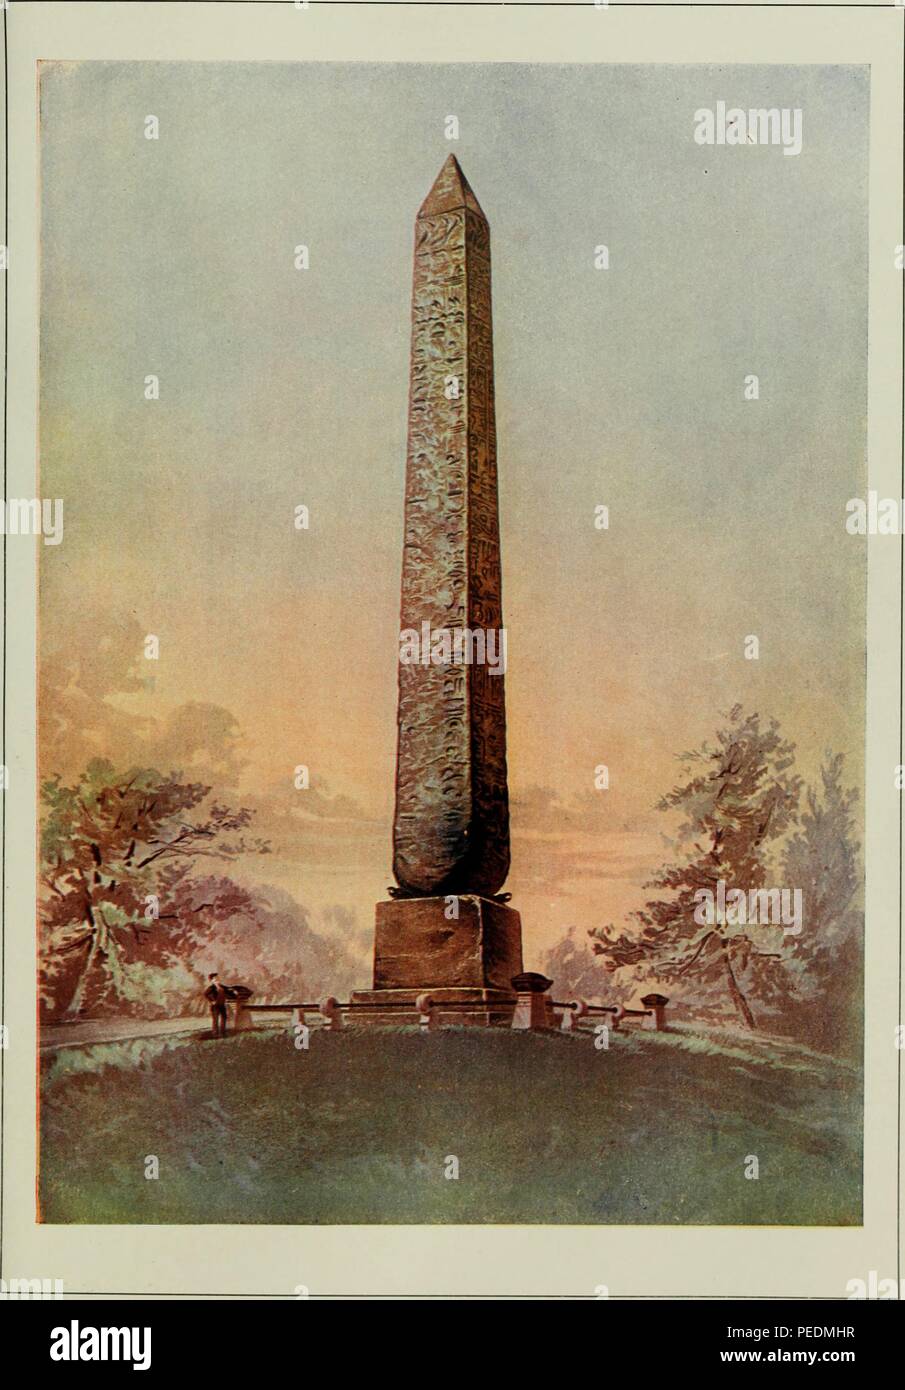 Impression couleur illustrant Cleopatra's Needle dans Central Park, New York, l'un des deux obélisques xviiième dynastie, à l'origine monté près du Grand Temple à Héliopolis en Egypte, qui a été offert aux États-Unis en 1877, 1903. Avec la permission de Internet Archive. () Banque D'Images